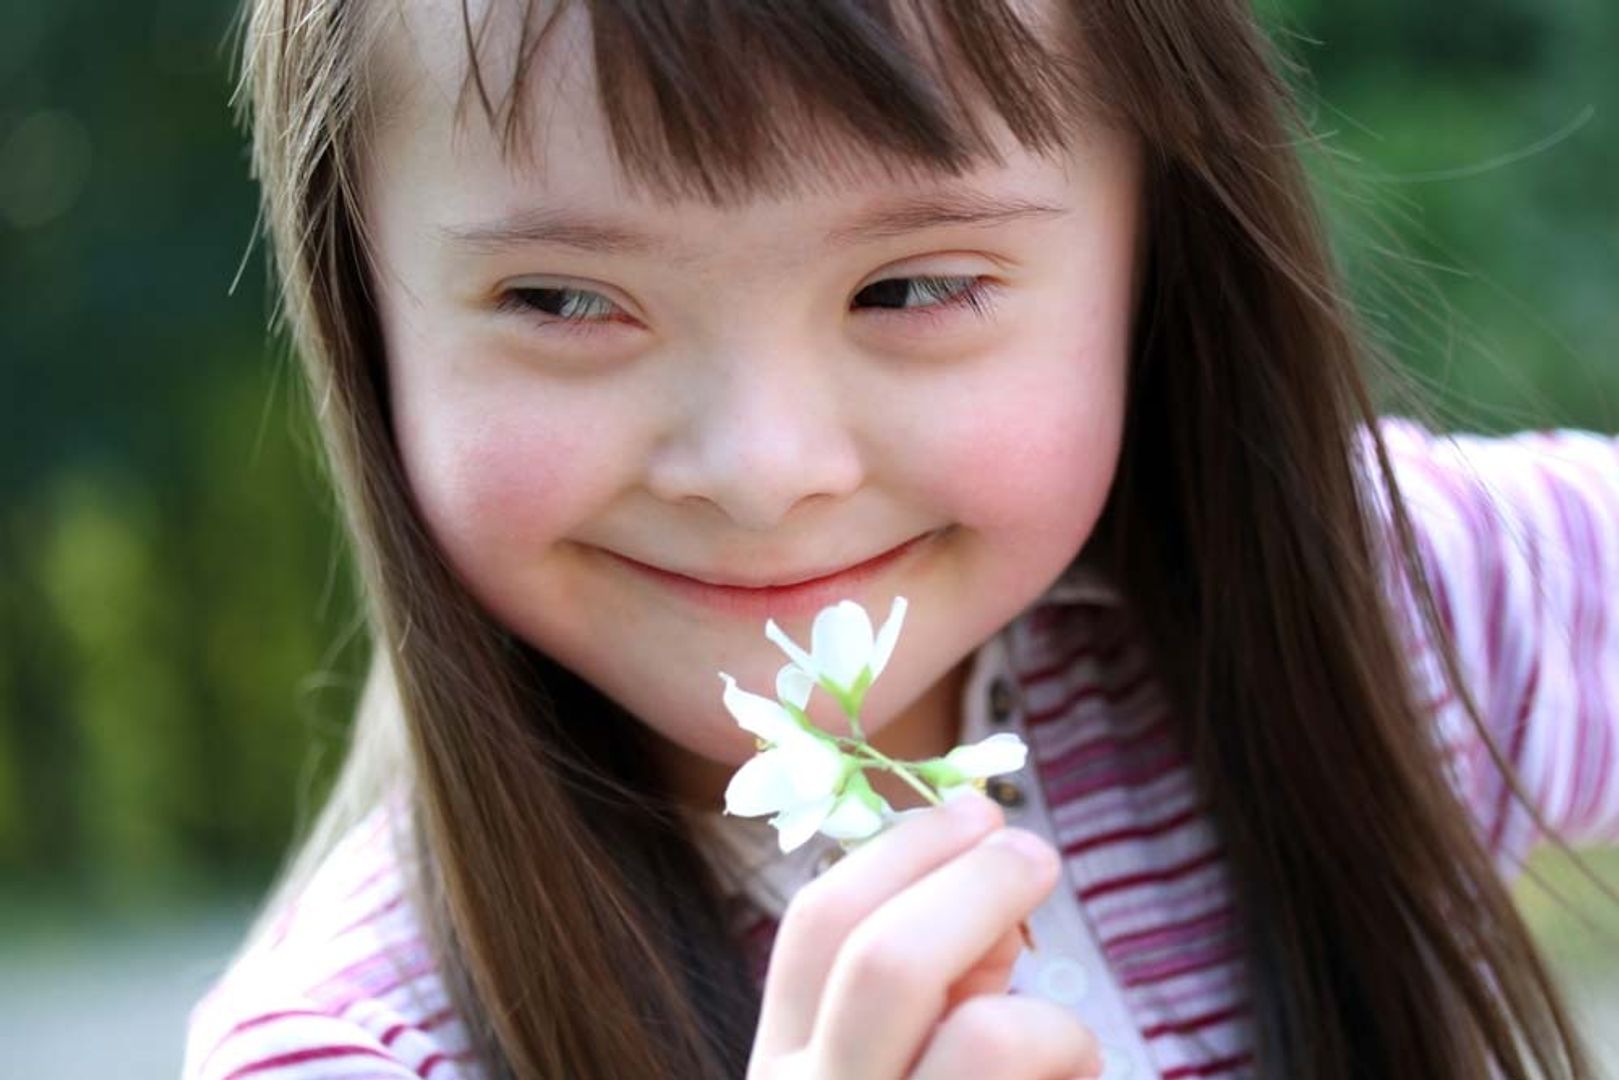 Foto de uma criança com síndrome de down sorrindo com uma flor na mão.